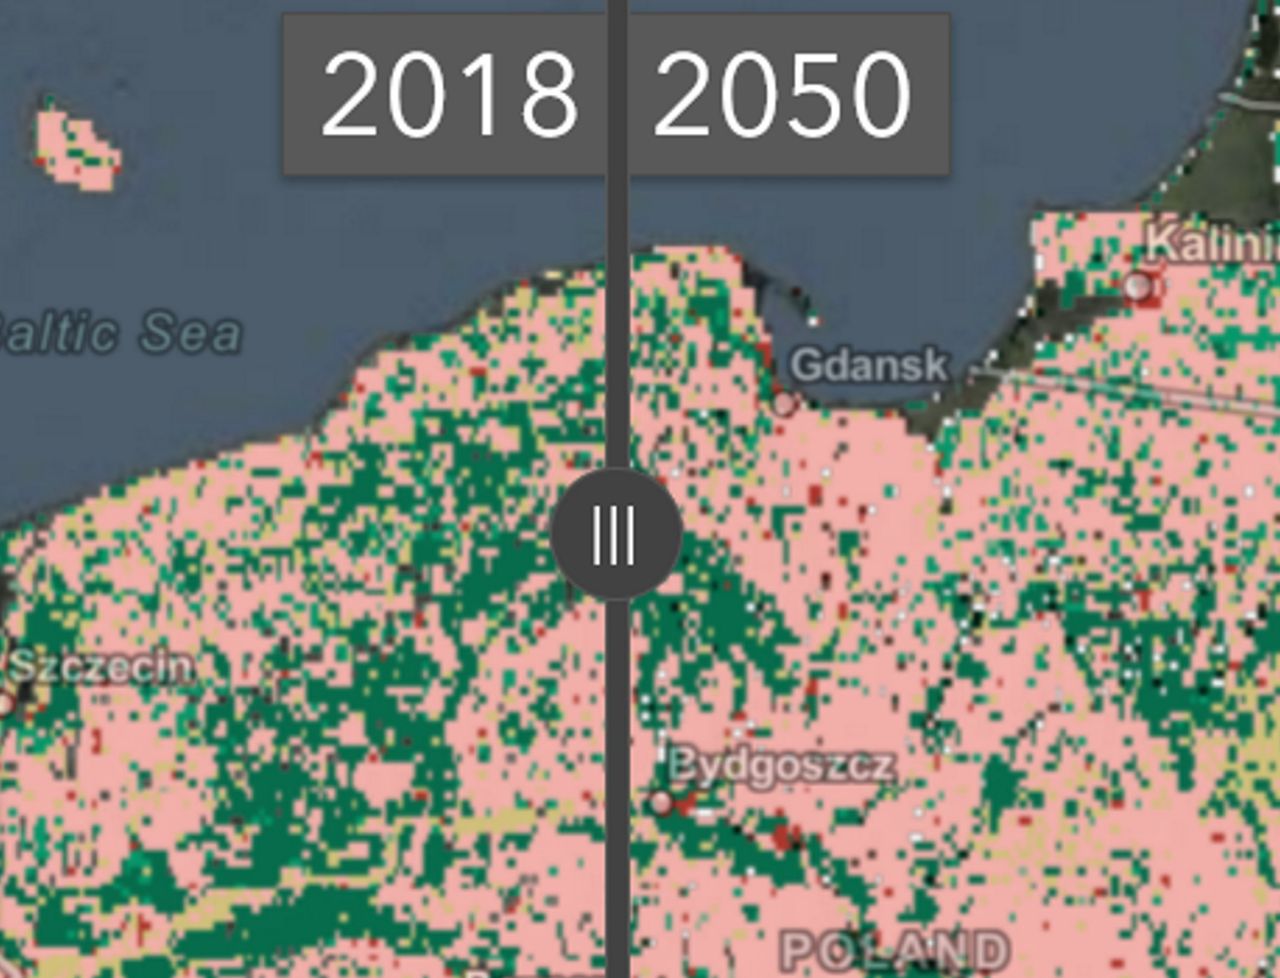 Nasza planeta w 2050 roku. Mapa pokazuje, jak będzie wyglądać świat